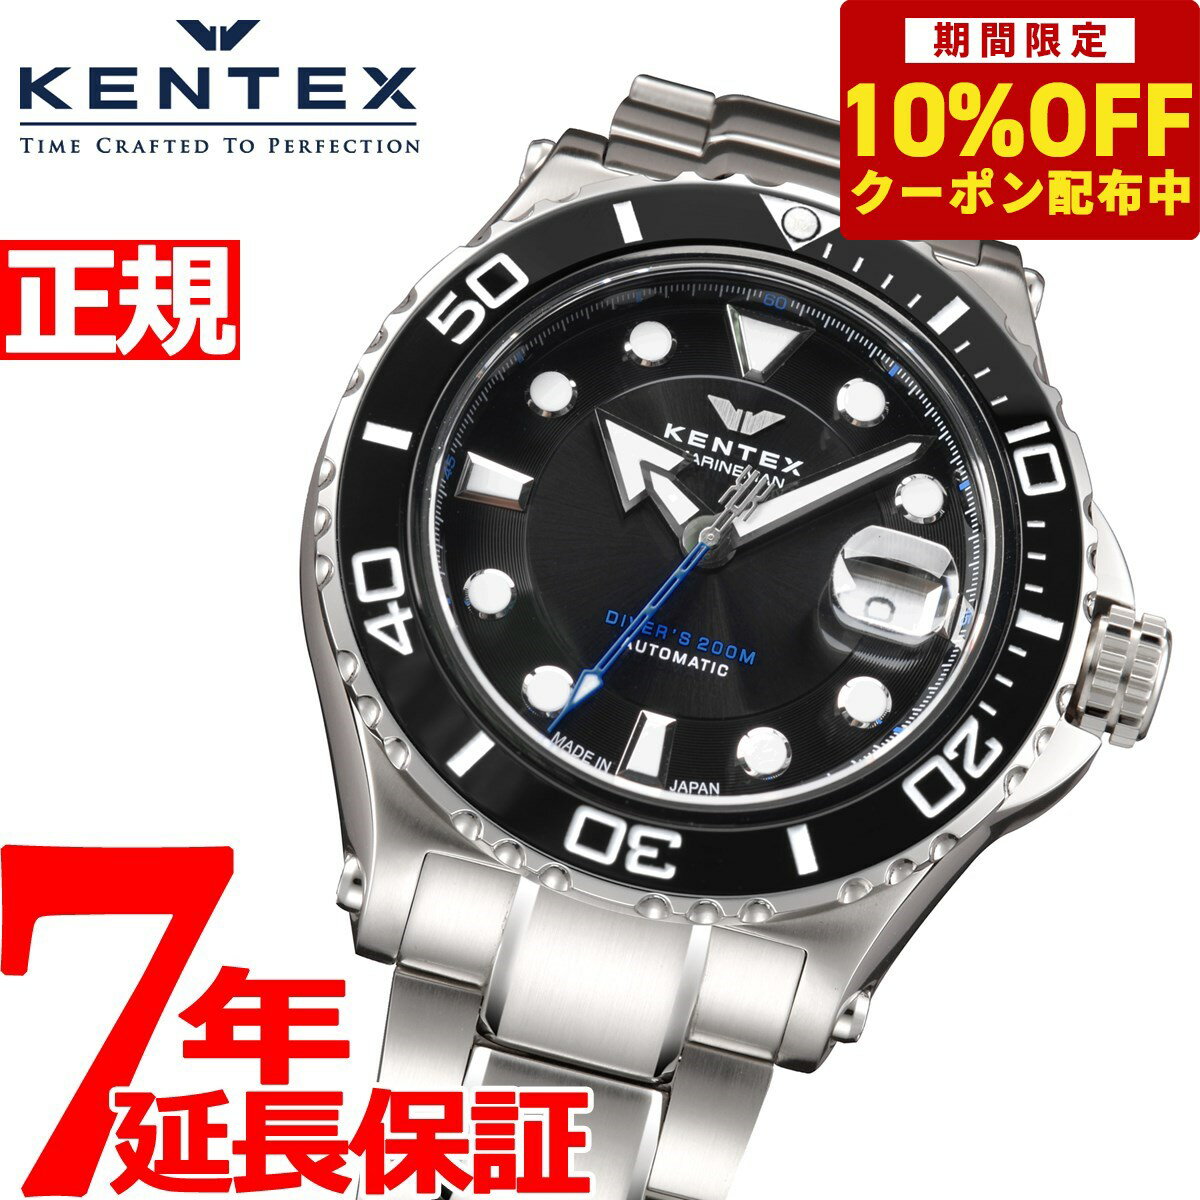 ケンテックス KENTEX 腕時計 時計 メンズ ダイバーズ 自動巻き マリンマン シーホースII 日本製 S706M-21